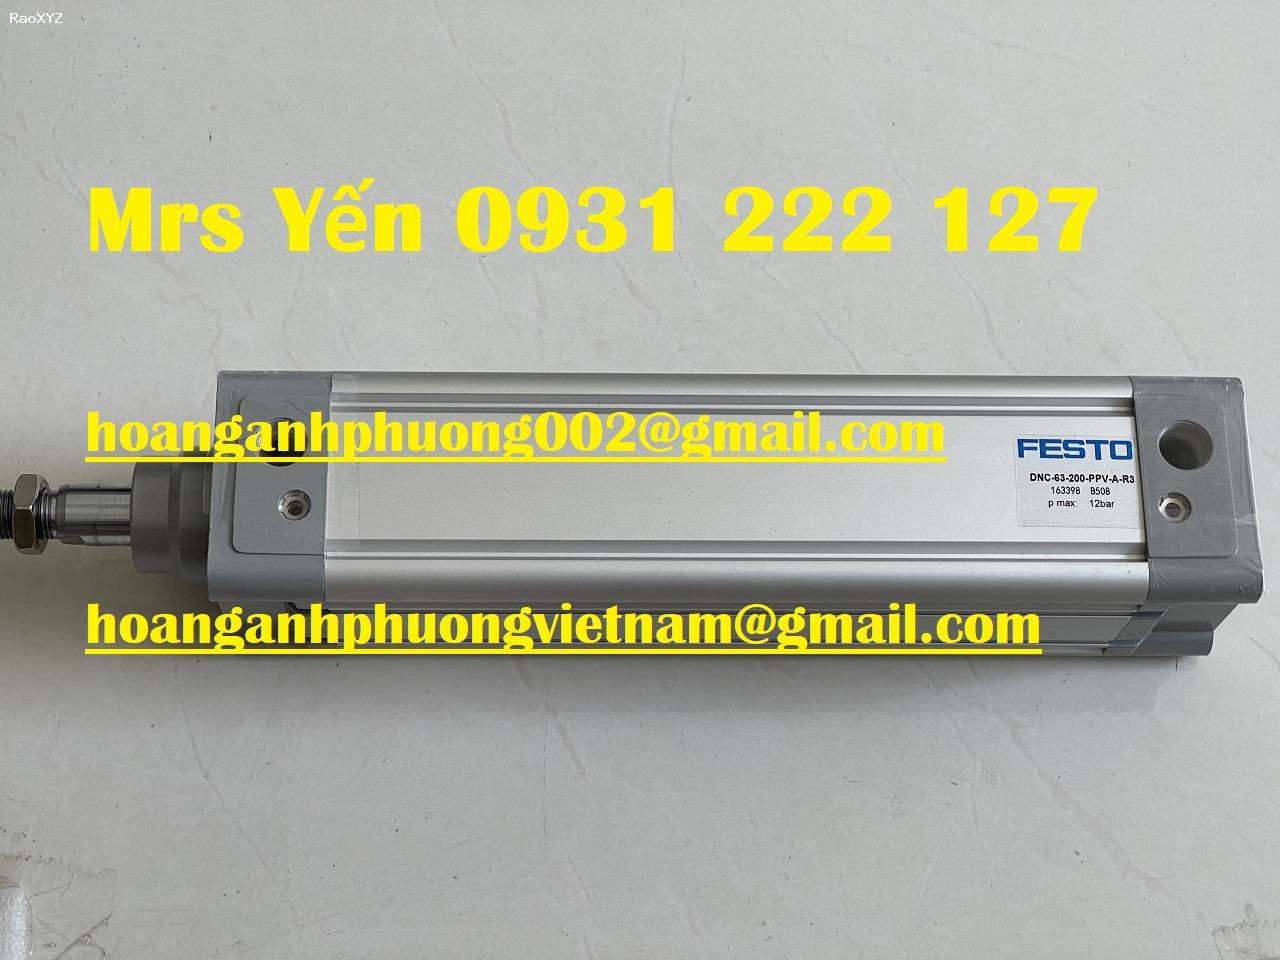 Xy lanh Festo DNC-63-200-PPV-A-R3 mới bảo hành 12 tháng